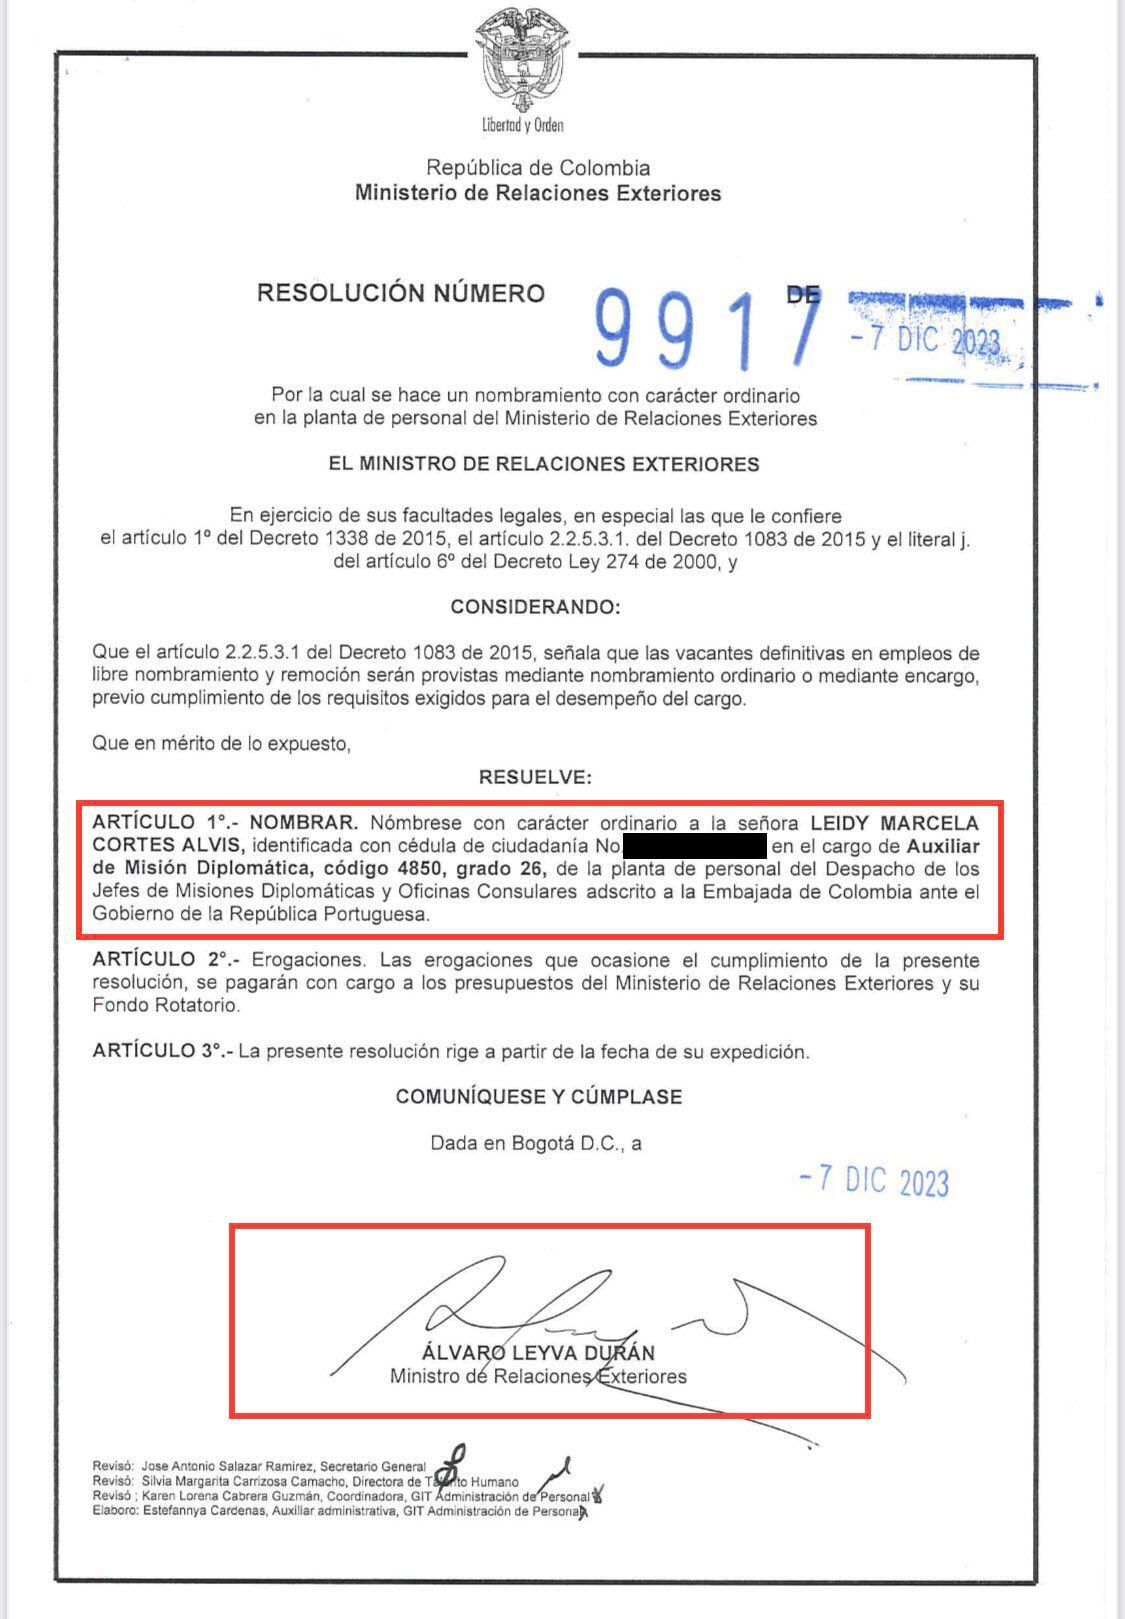 Decreto firmado por Álvaro Leyva para nombrar a Leidy Marcela Cortés Ávila en la embajada de Colombia en Portugal - crédito @AForeroM / X.